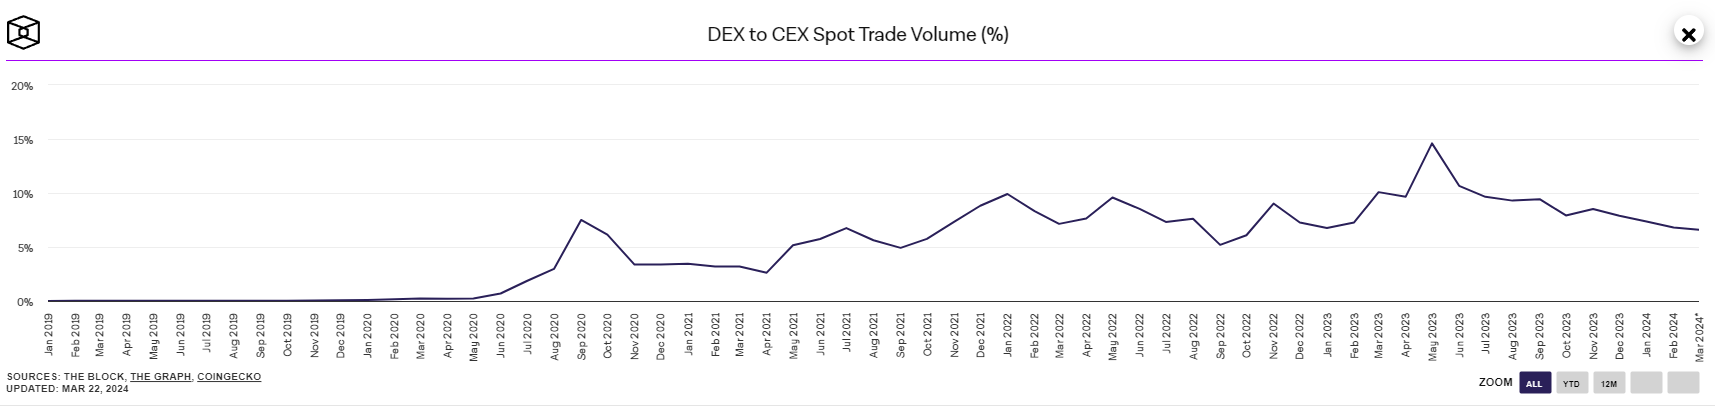 Объем торгов DEX по отношению к CEX за 5 лет. По данным TheBlock